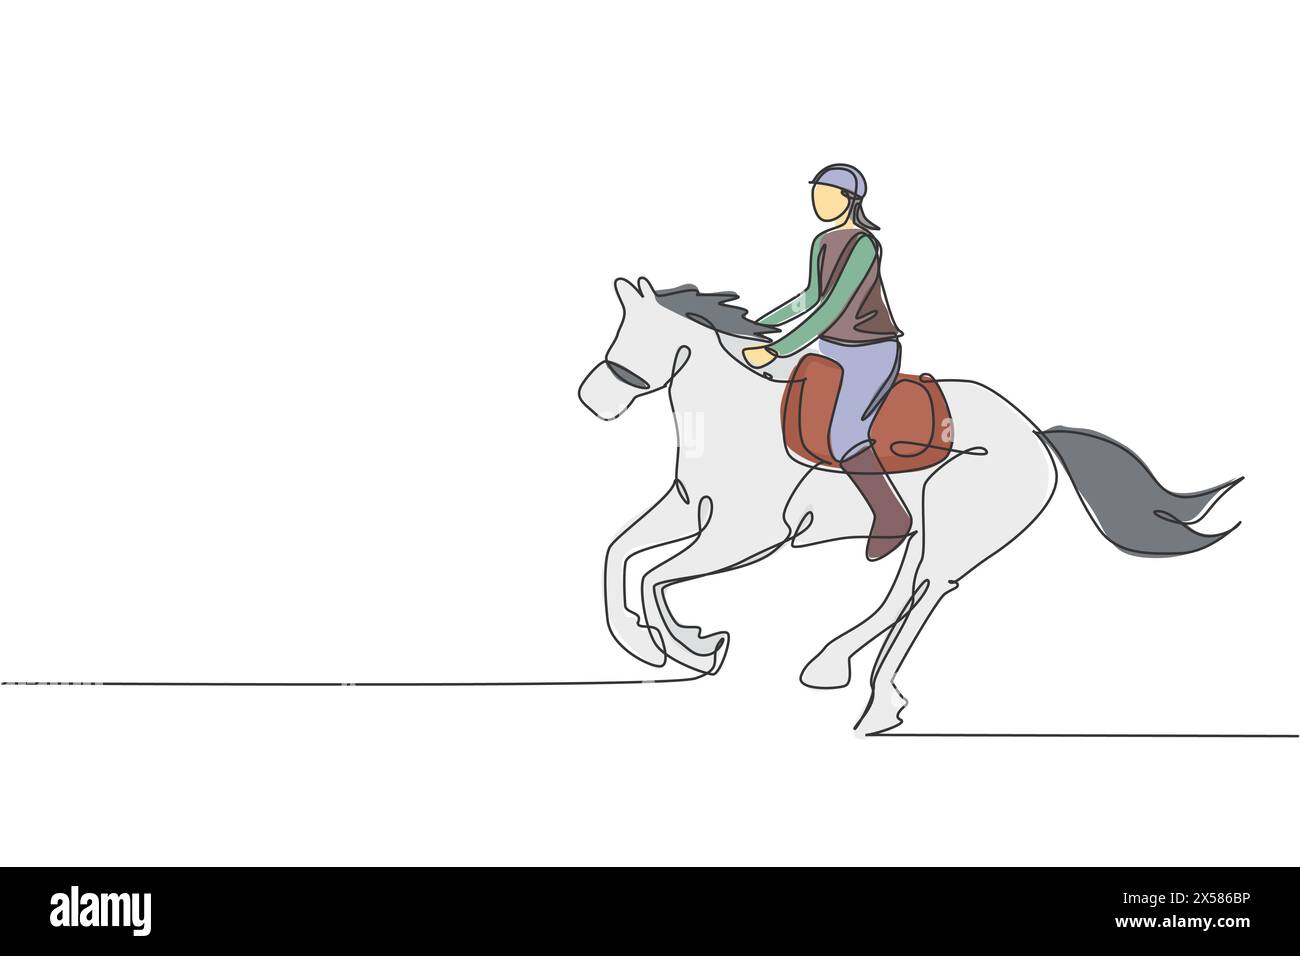 Disegnare una sola linea continua di giovani cavalieri professionisti che corrono con un cavallo intorno alle scuderie. Percorso di allenamento per gli sport equestri Illustrazione Vettoriale